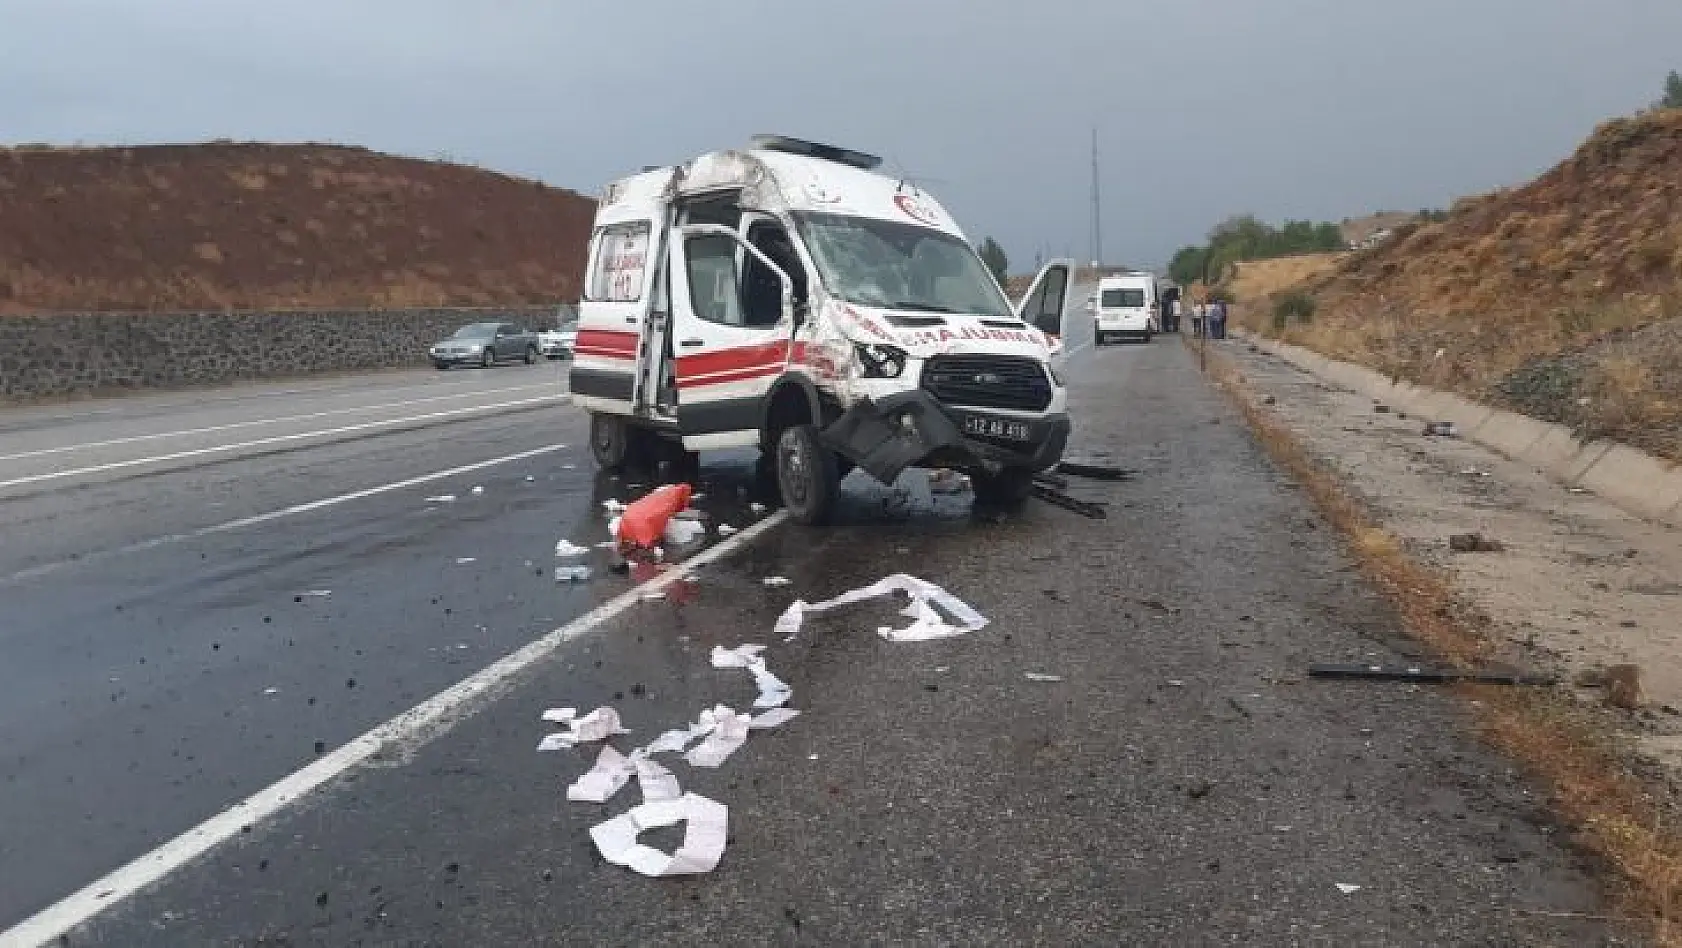 Bingöl'de ambulans kaza yaptı: 3 yaralı